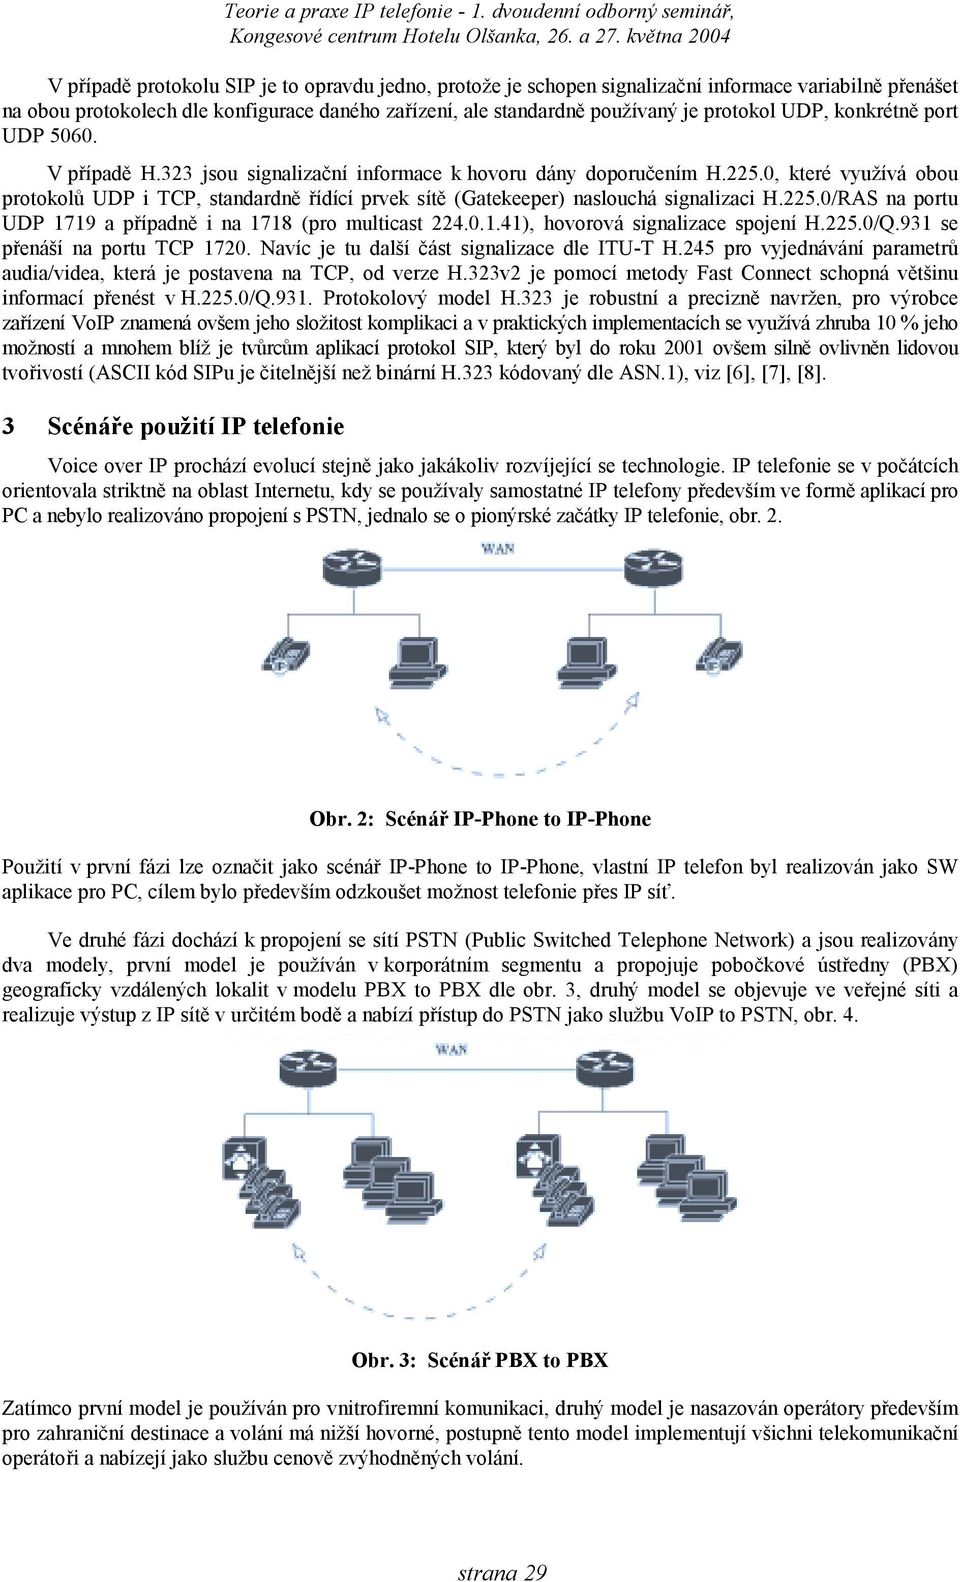 0, které využívá obou protokolů UDP i TCP, standardně řídící prvek sítě (Gatekeeper) naslouchá signalizaci H.225.0/RAS na portu UDP 1719 a případně i na 1718 (pro multicast 224.0.1.41), hovorová signalizace spojení H.